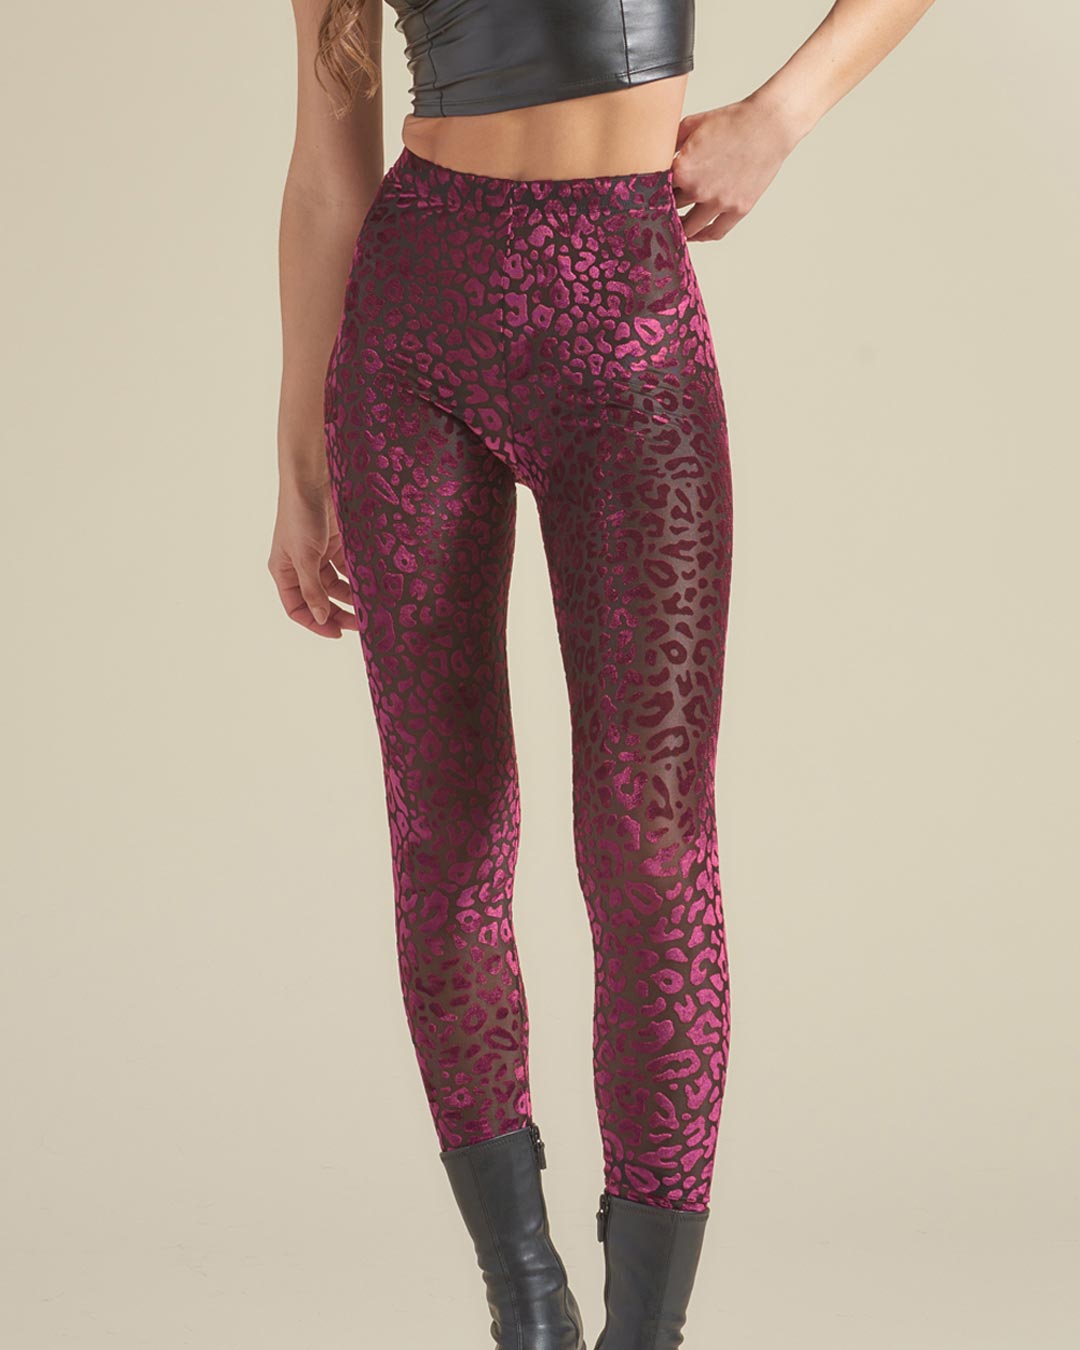 Burnout Velvet High Rise Leggings in Ruby Leopard Design on Woman